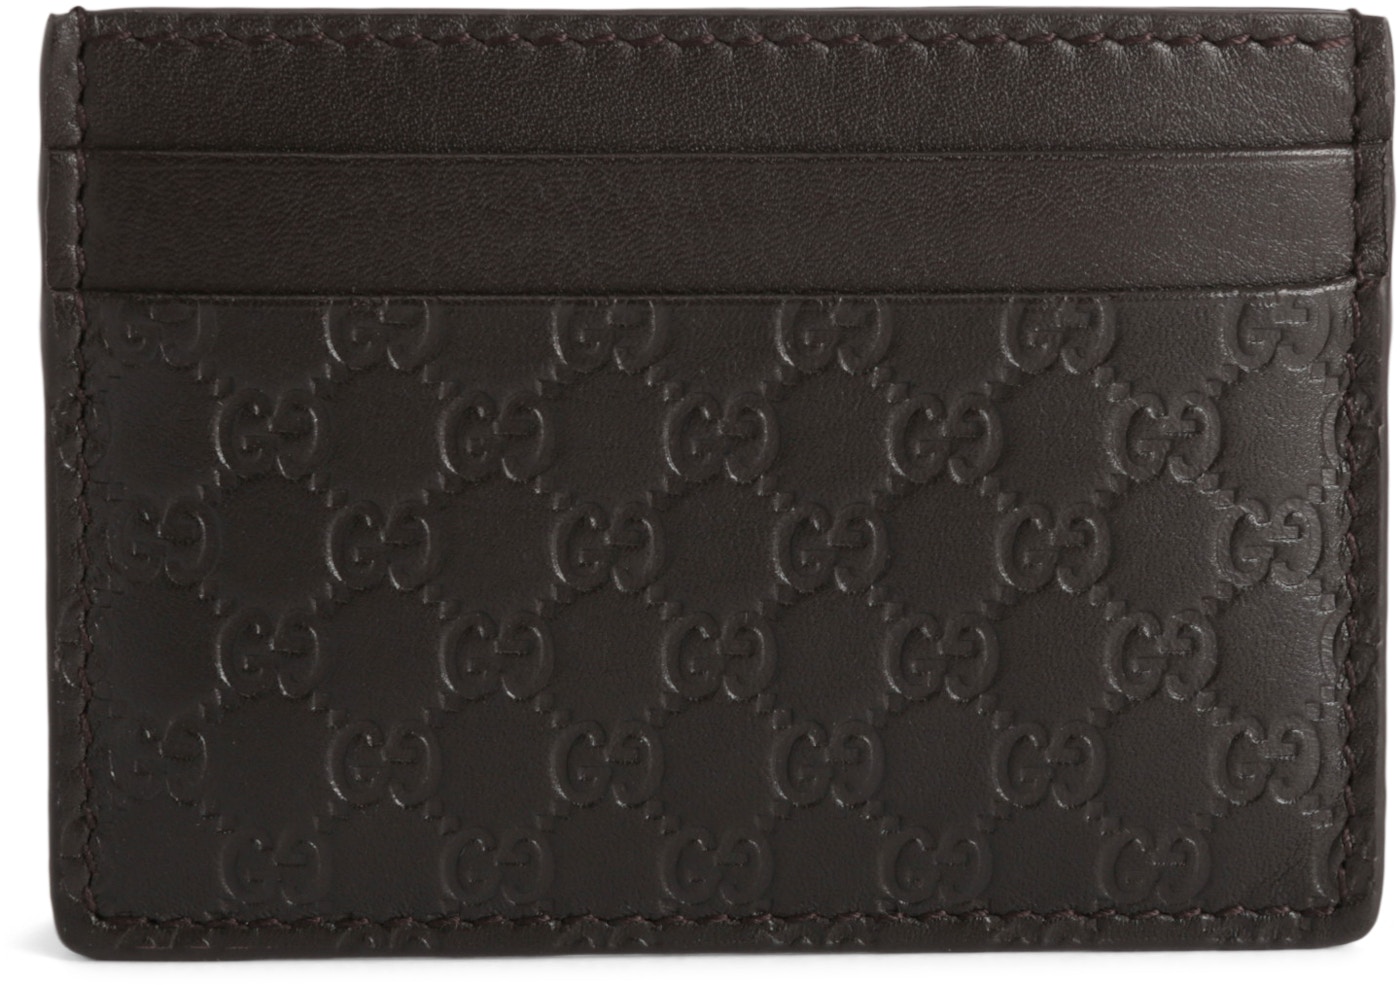 Gucci Card Case Microguccissima Black In Leather